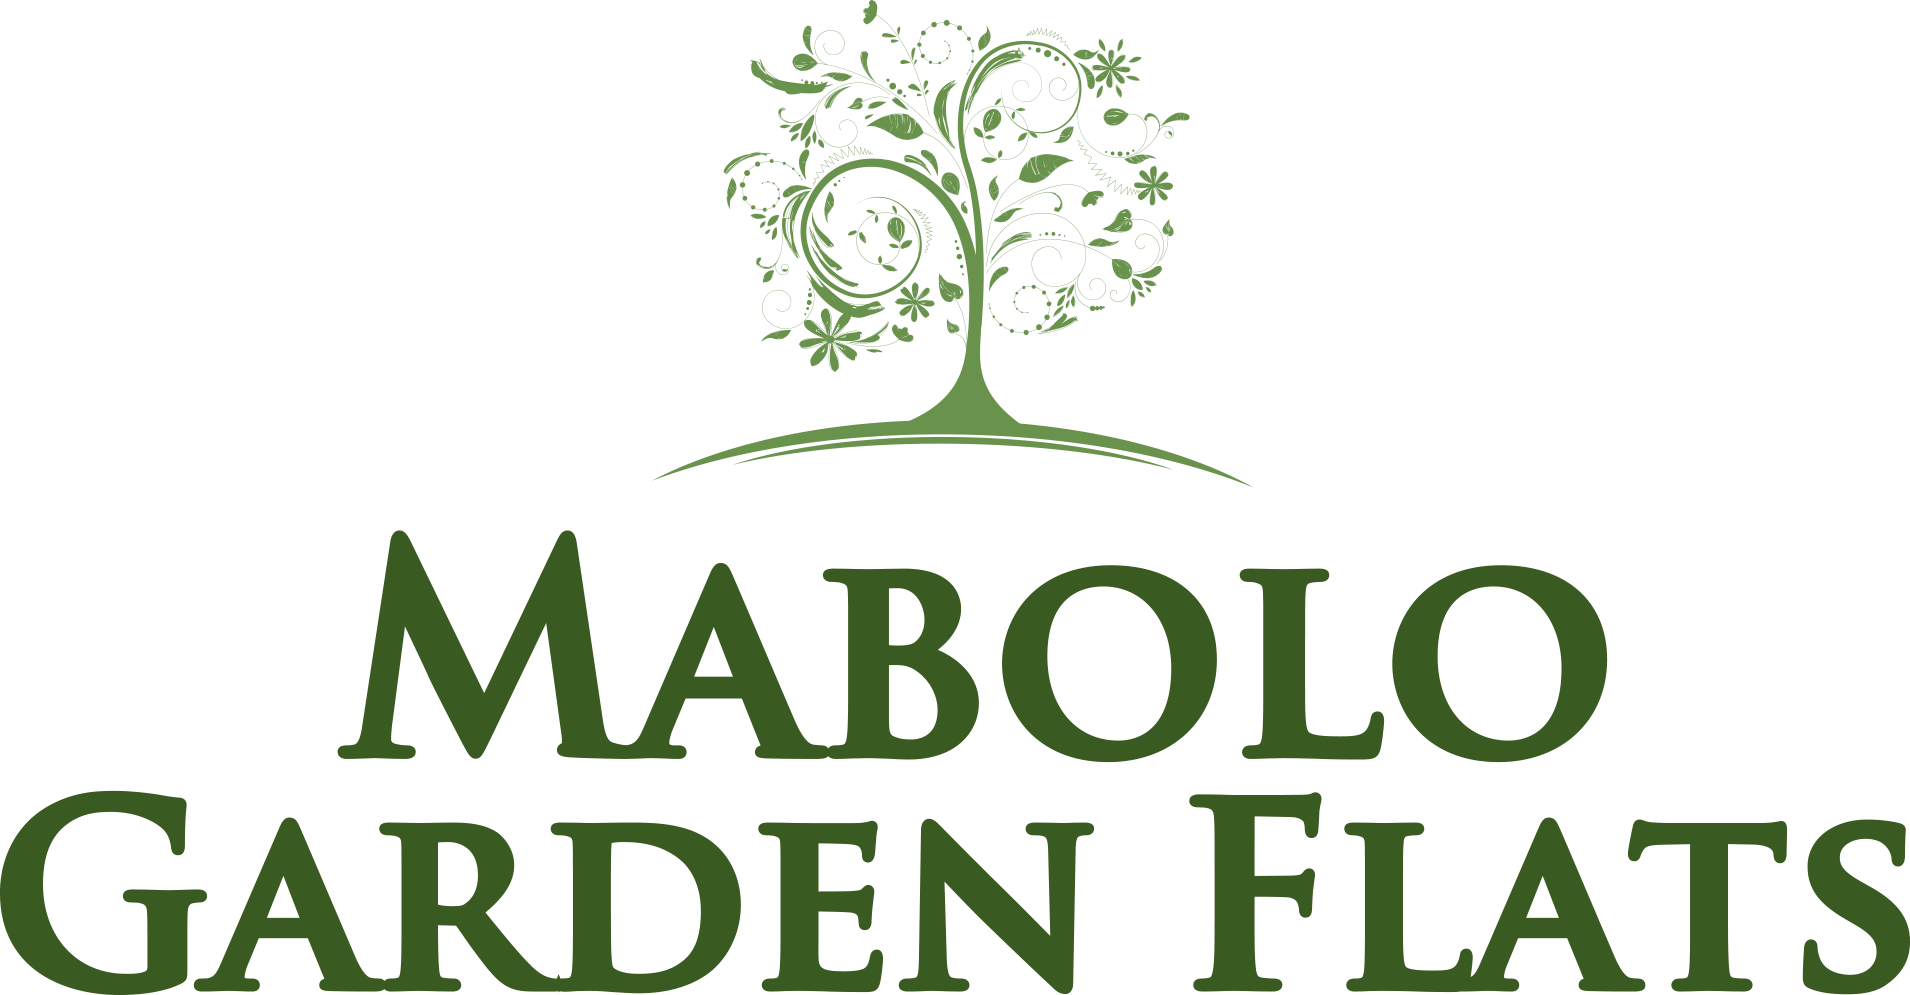 Mabolo Garden Flats